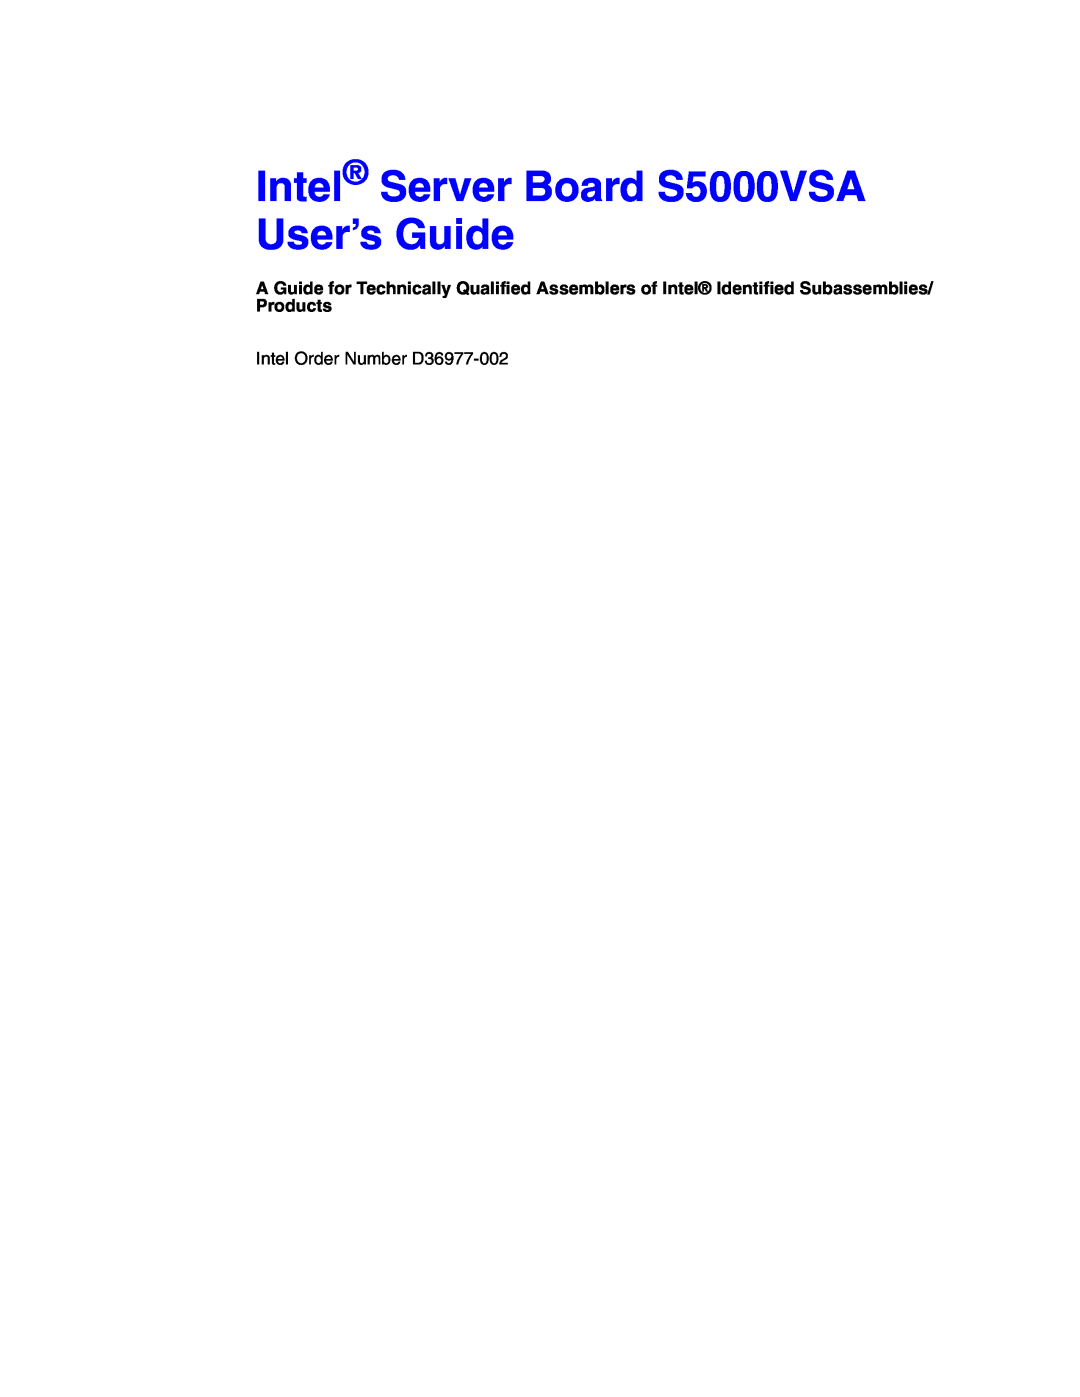 Intel S5000VSA manual Recipe ID: 19SYAM190000000011-01 